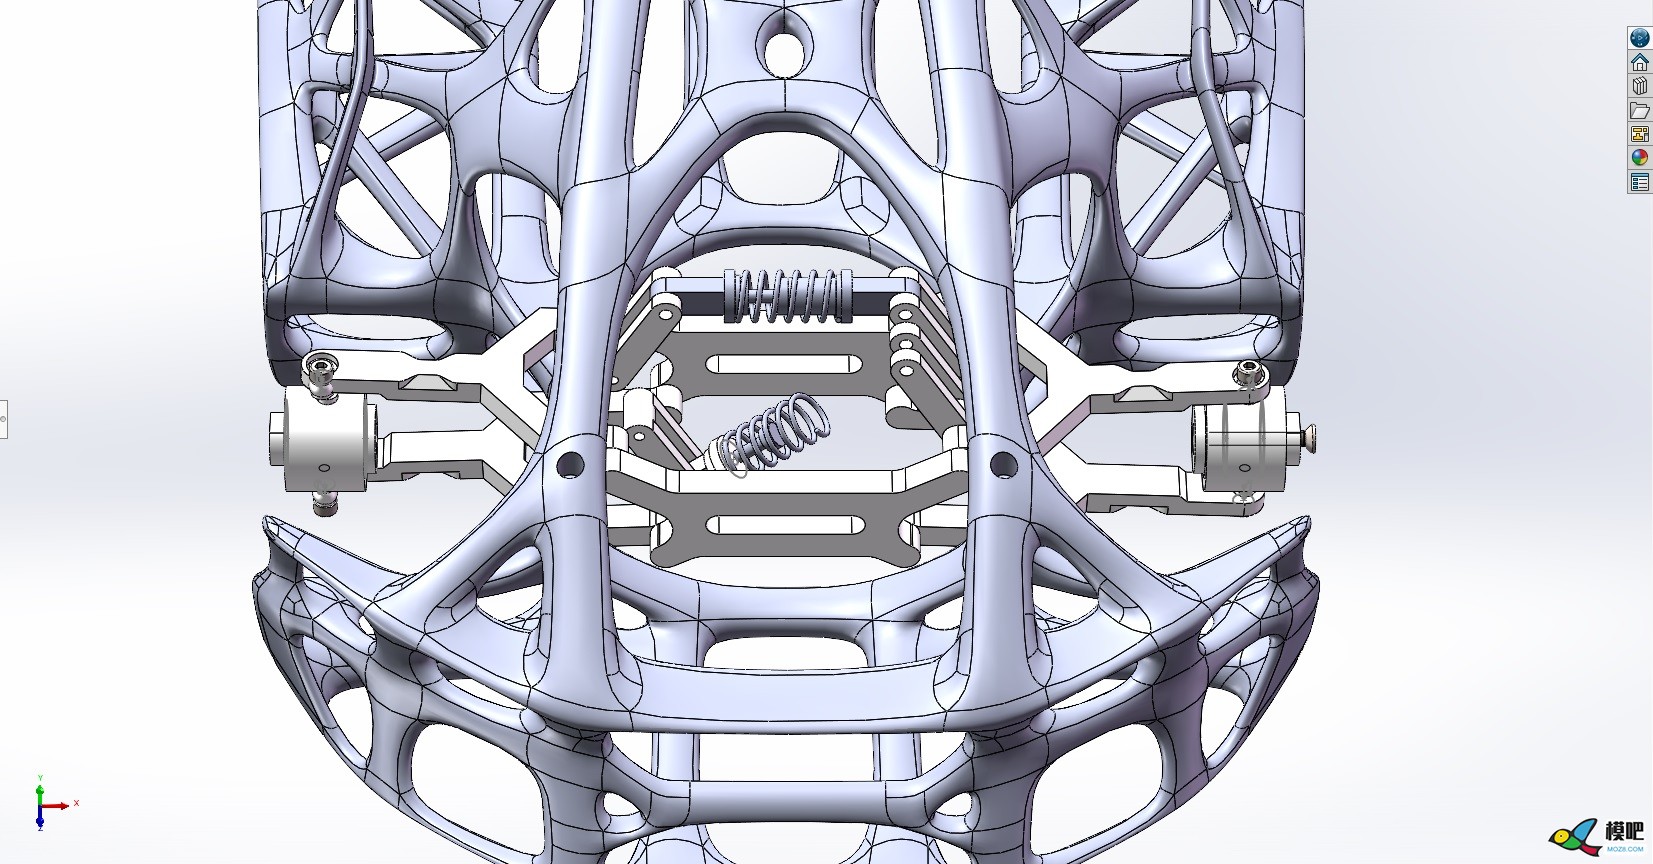 从零开始造车 概念RC跑车设计 连载「阿巴瑟创作日记」 模型,从零开始,外观设计,曲面建模,细分曲面 作者:机械体阿巴瑟 5718 